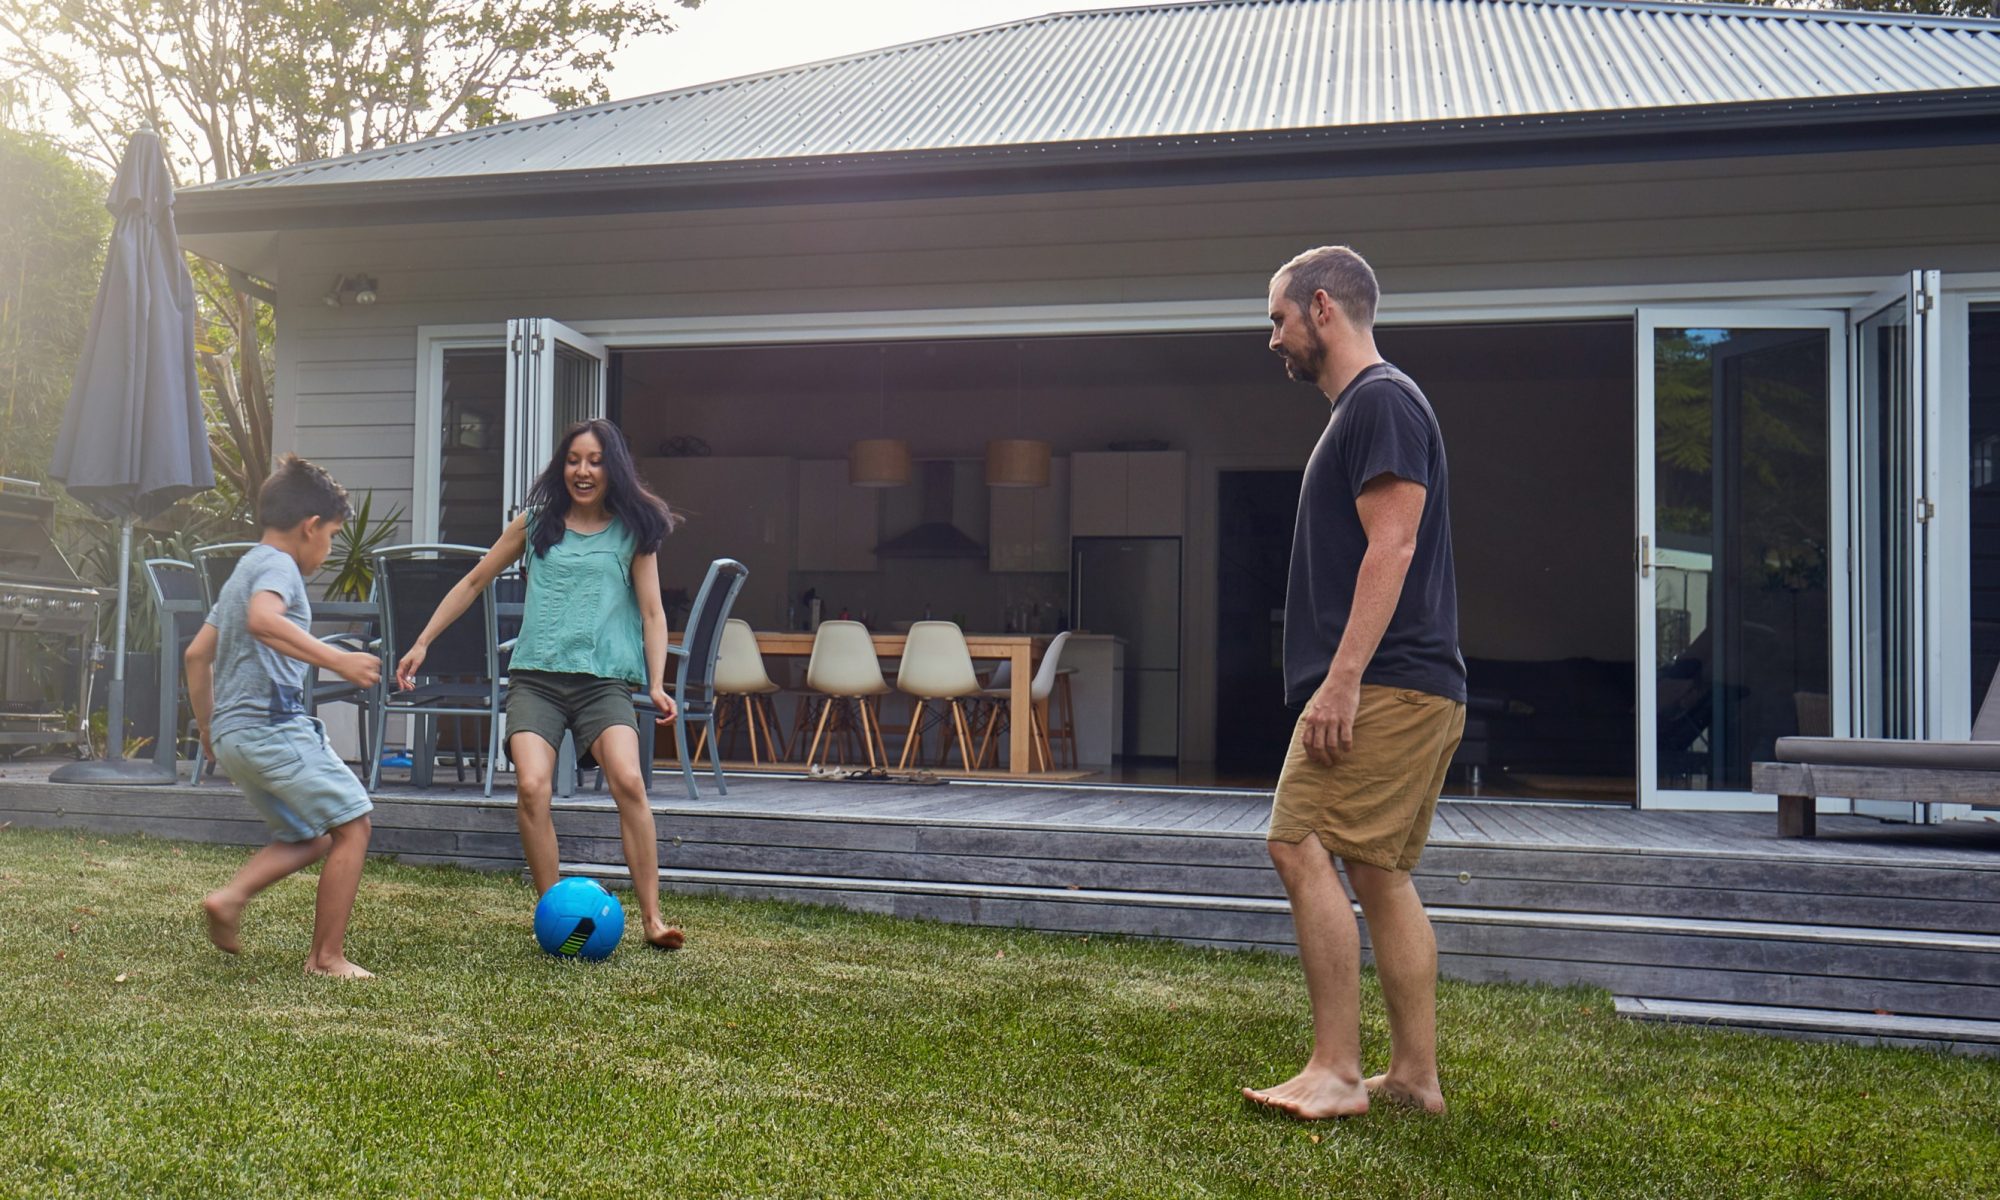 Young family kicking ball in backyard